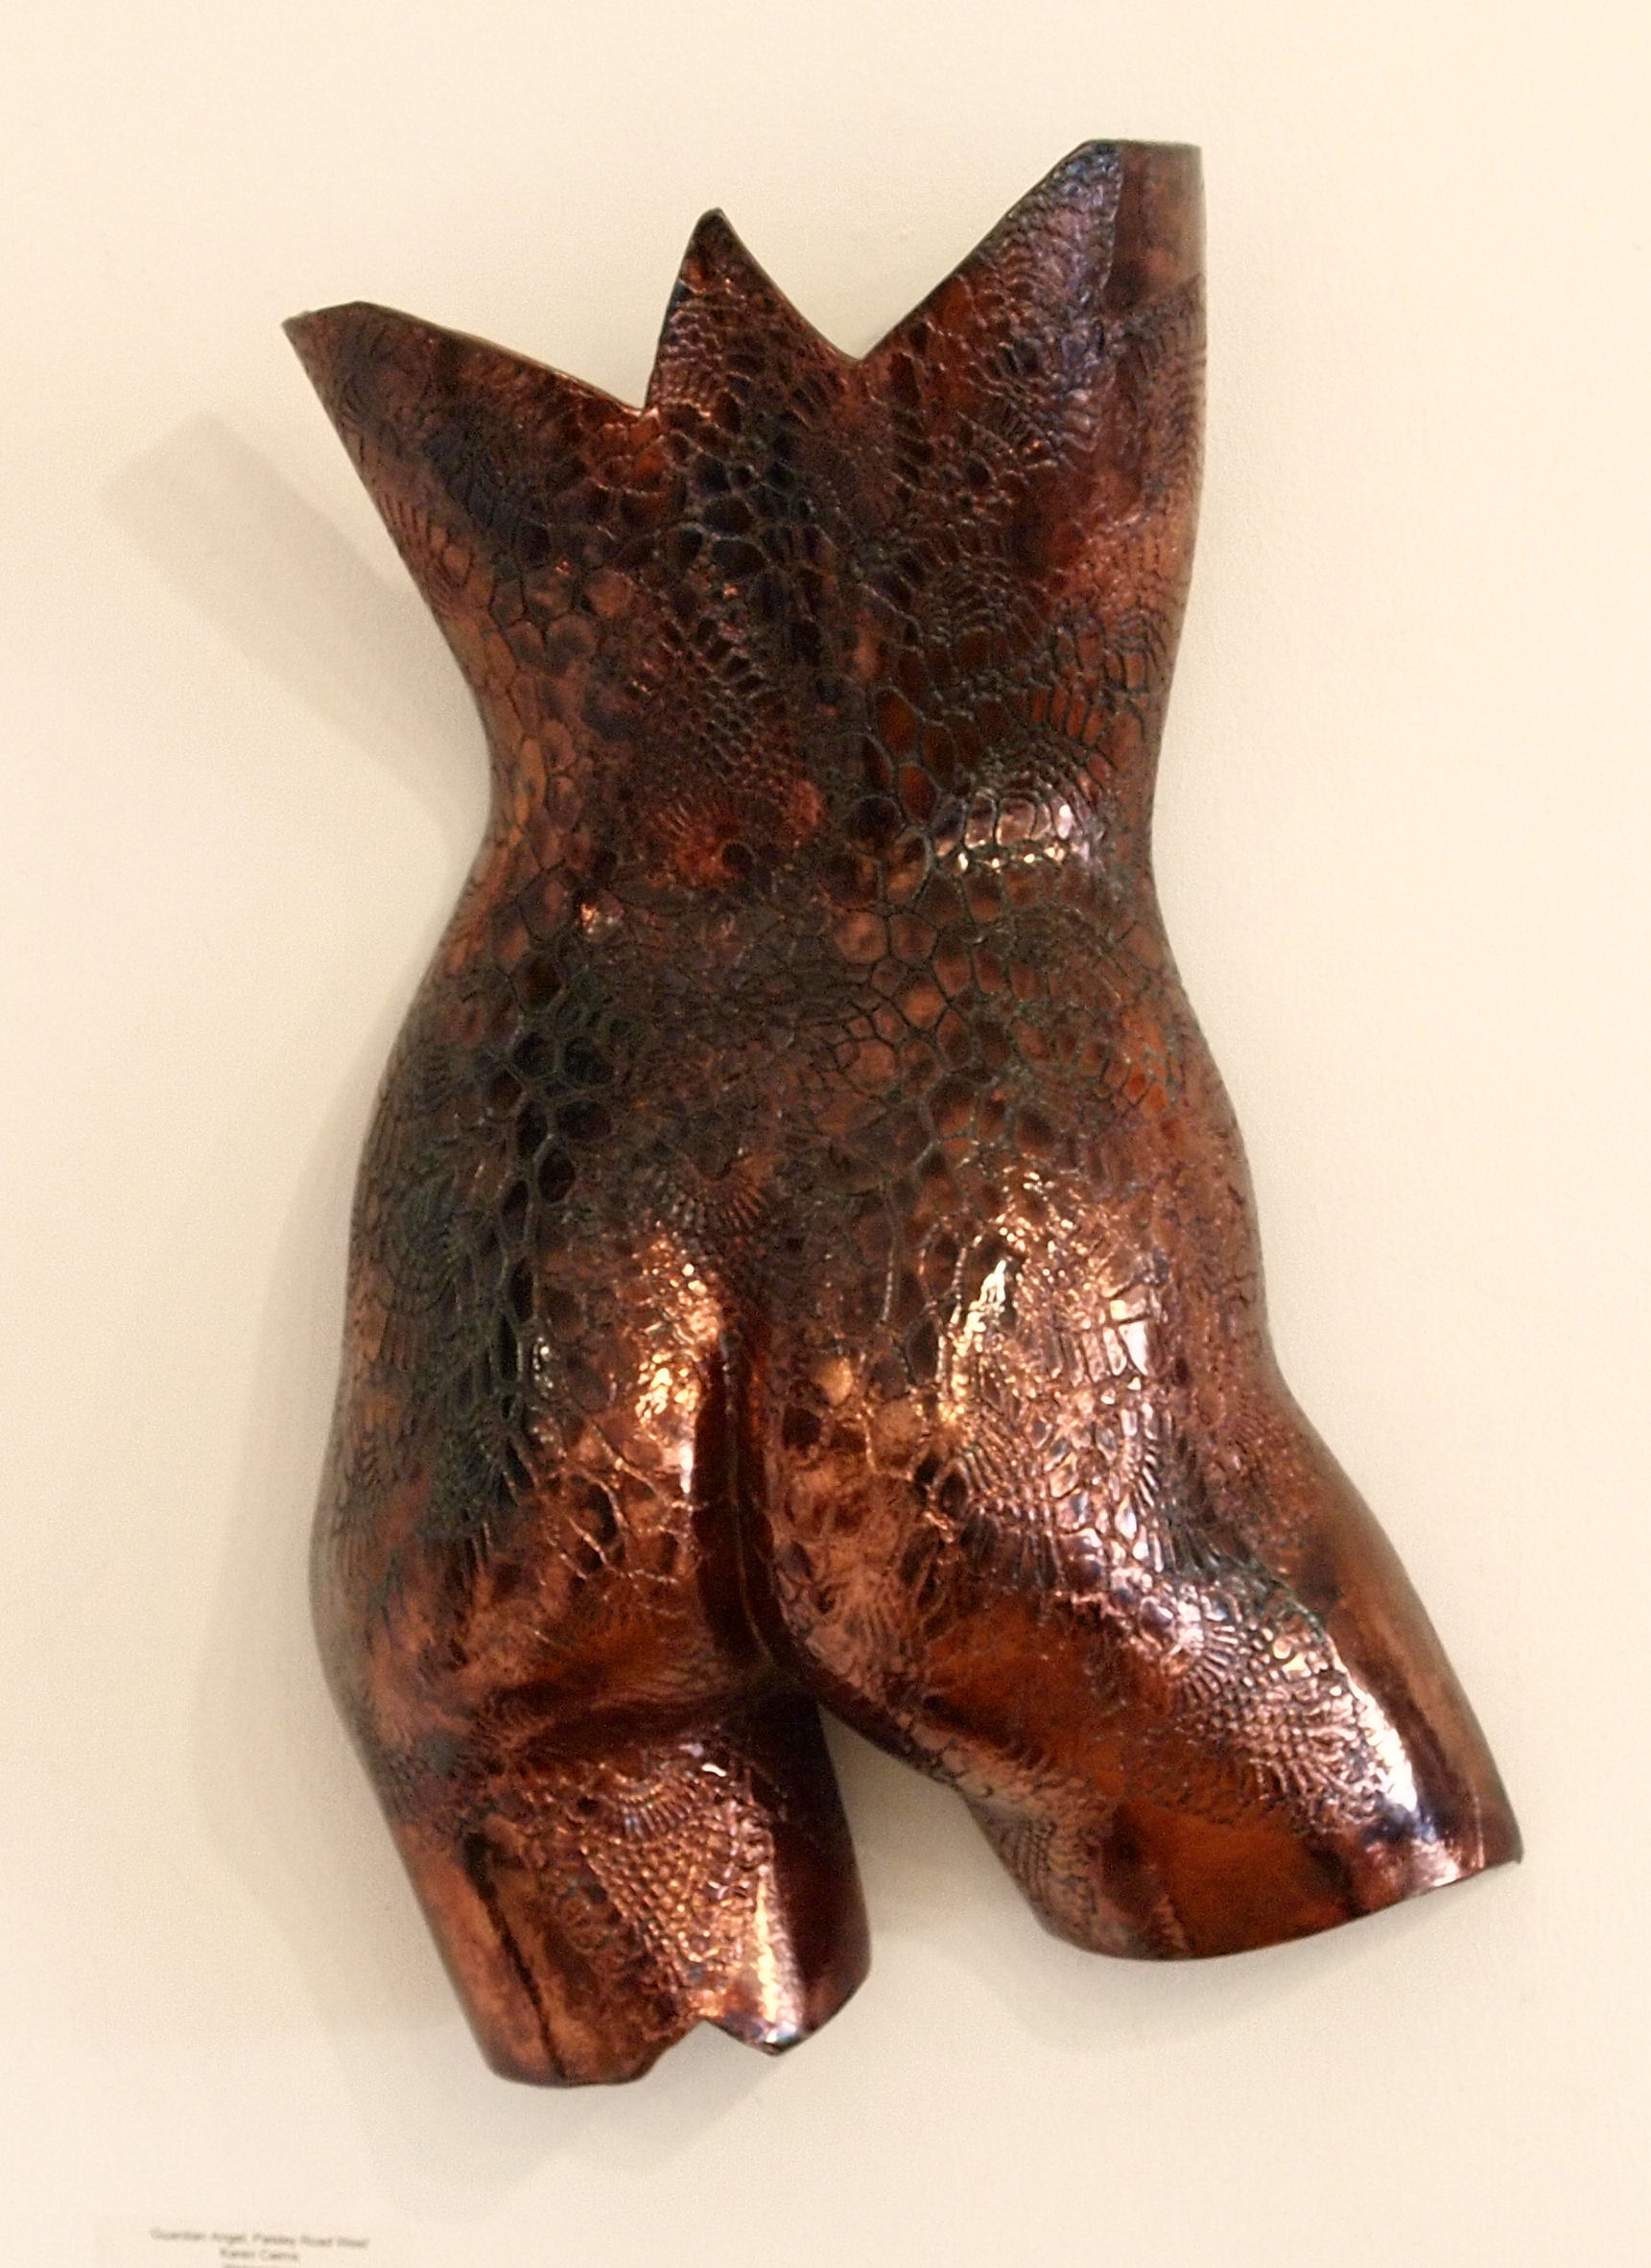 'Bronze Bum #2' by artist Julian Smith